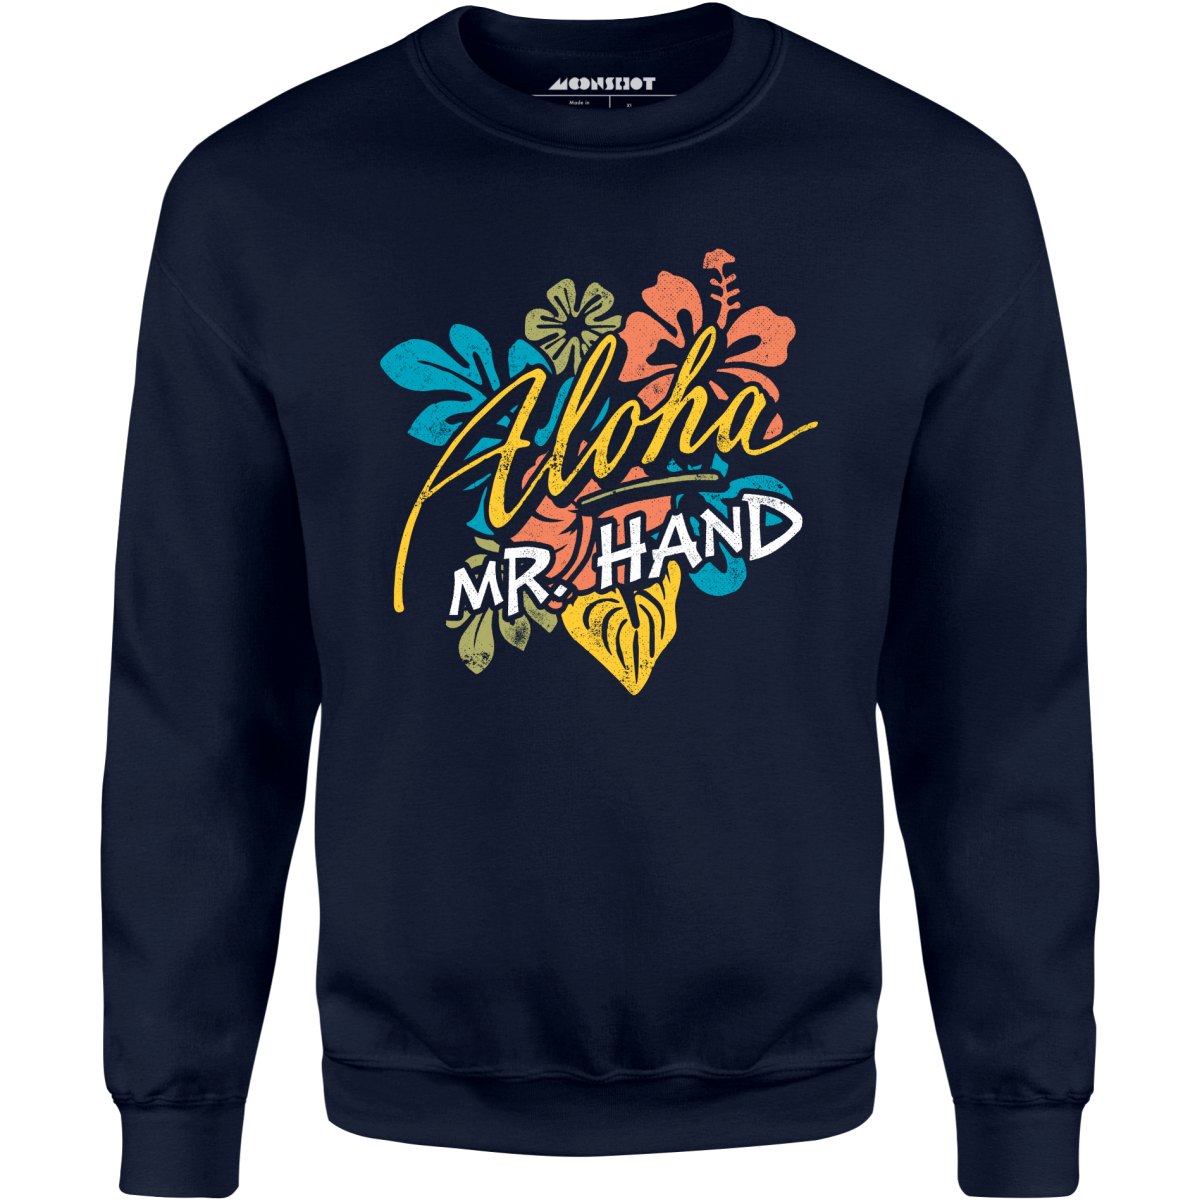 Aloha Mr. Hand - Unisex Sweatshirt